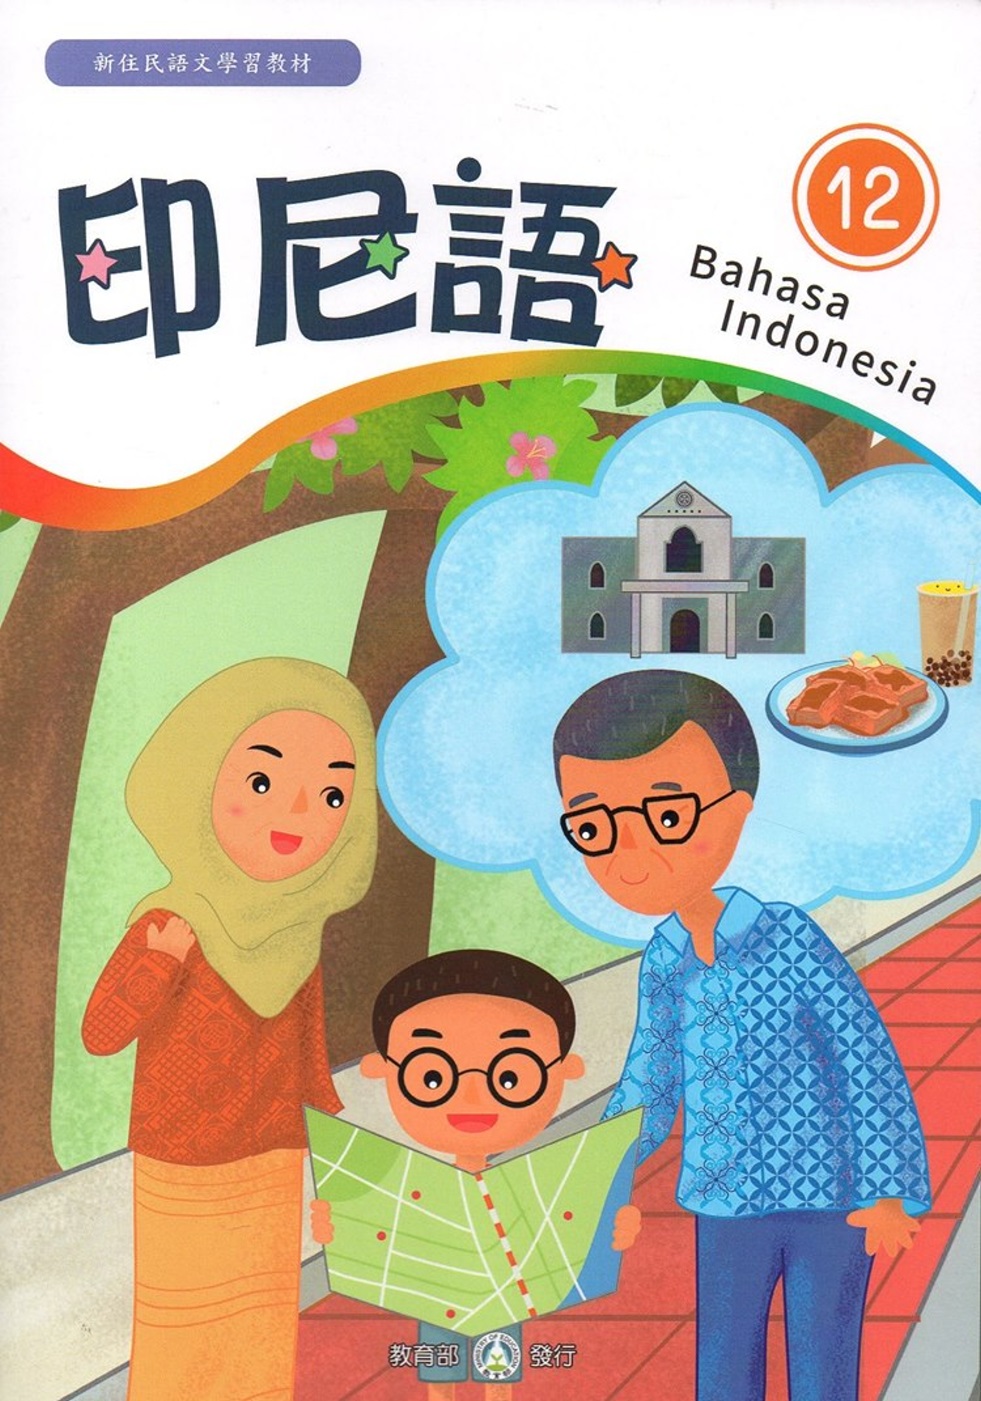 新住民語文學習教材印尼語第12冊